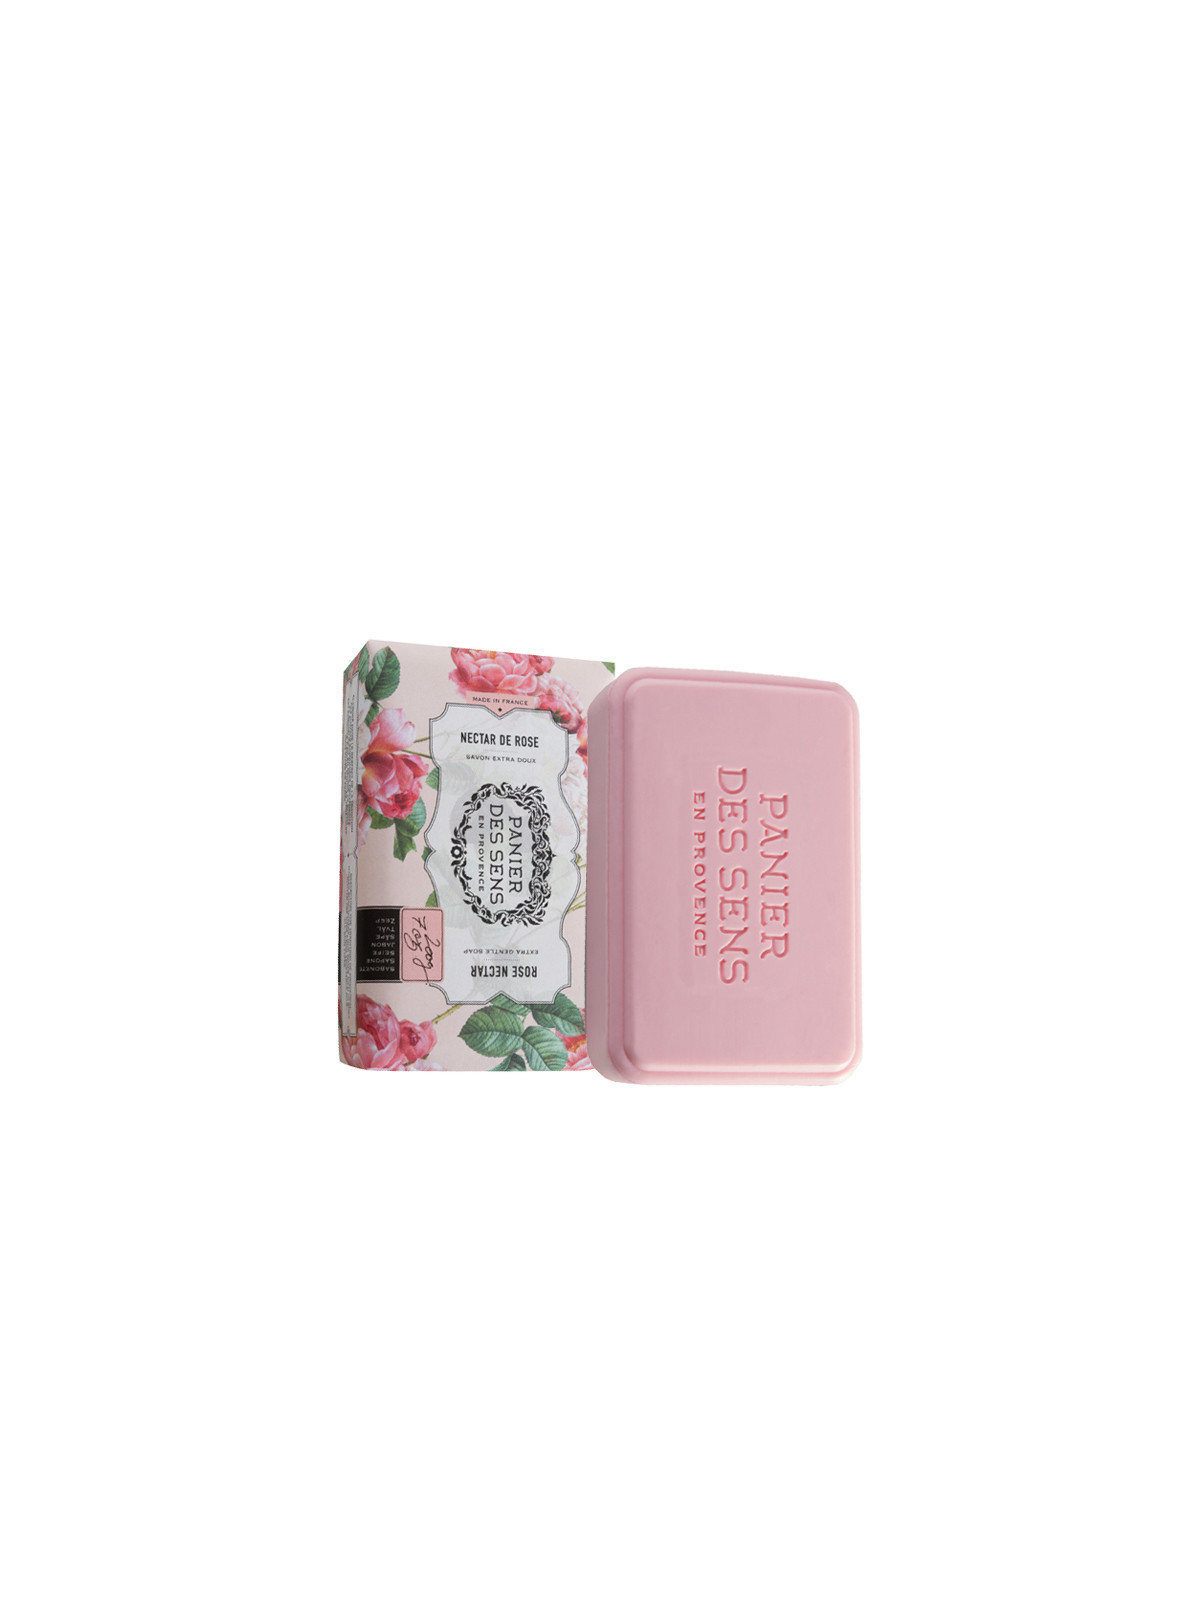 Soap | Rose Nectar